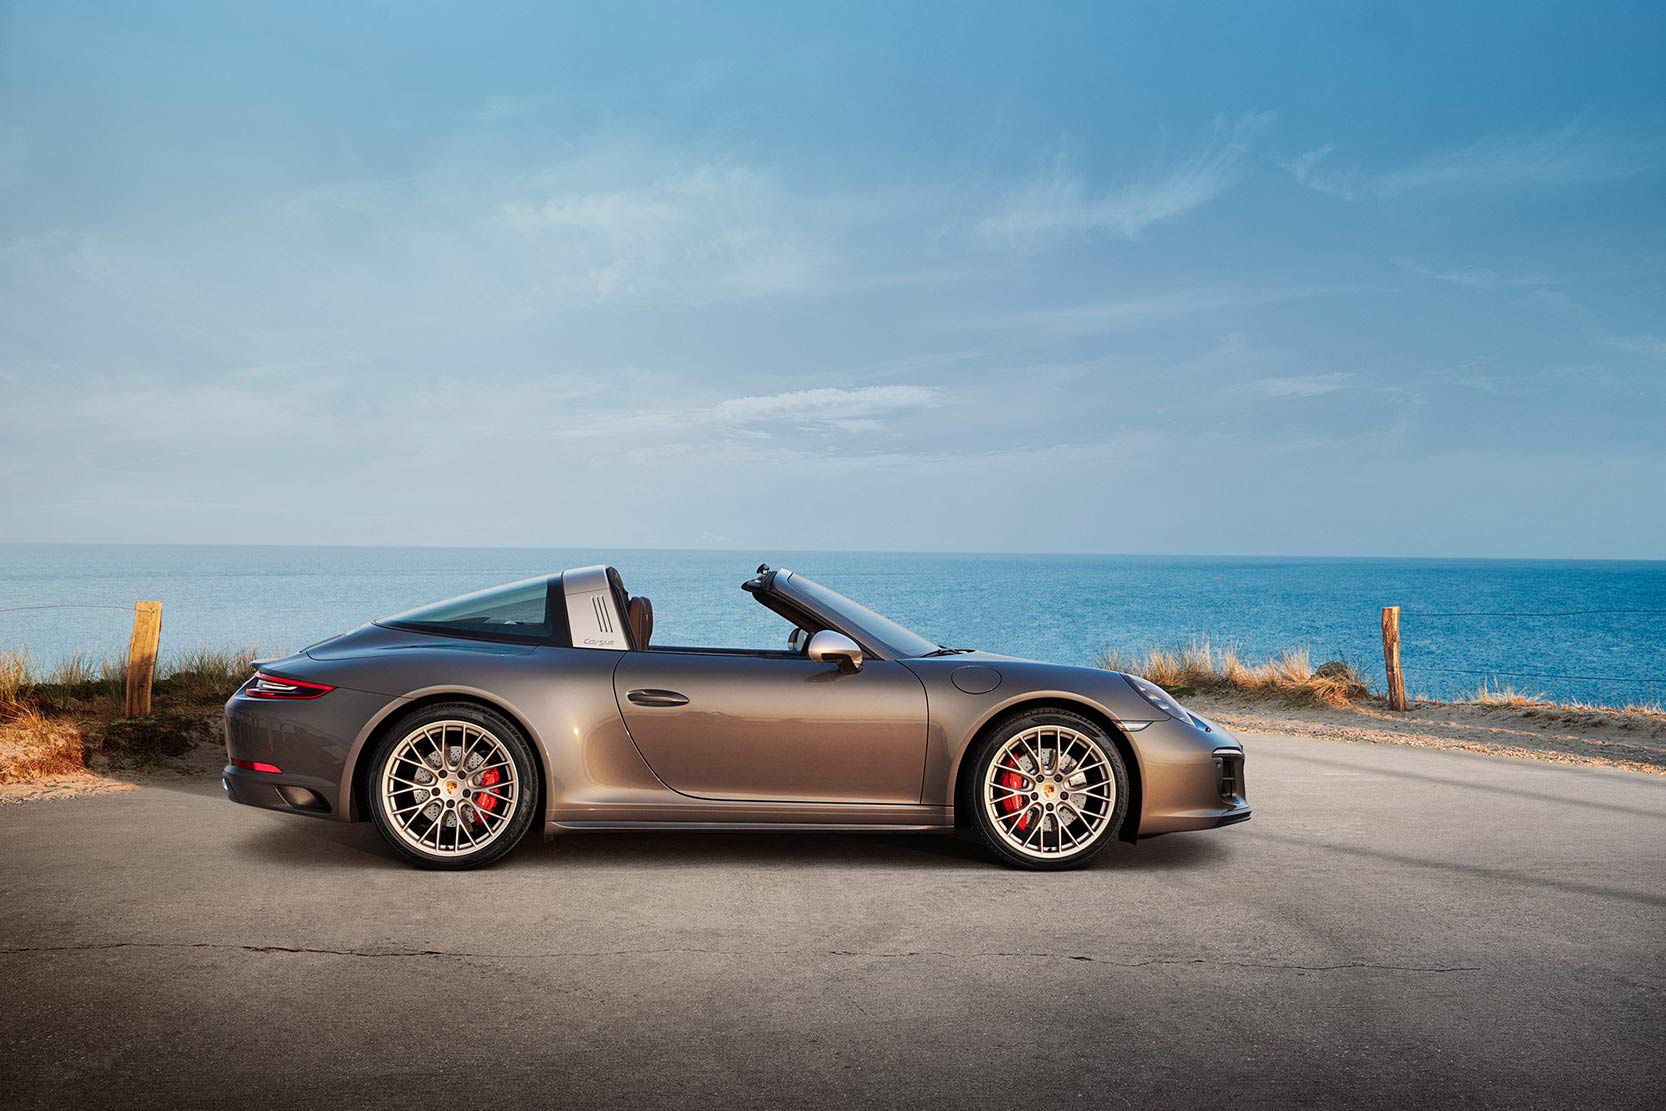 Image principale de l'actu: Porsche 911 targa 4 gts exclusive manufaktur edition pas donnee 